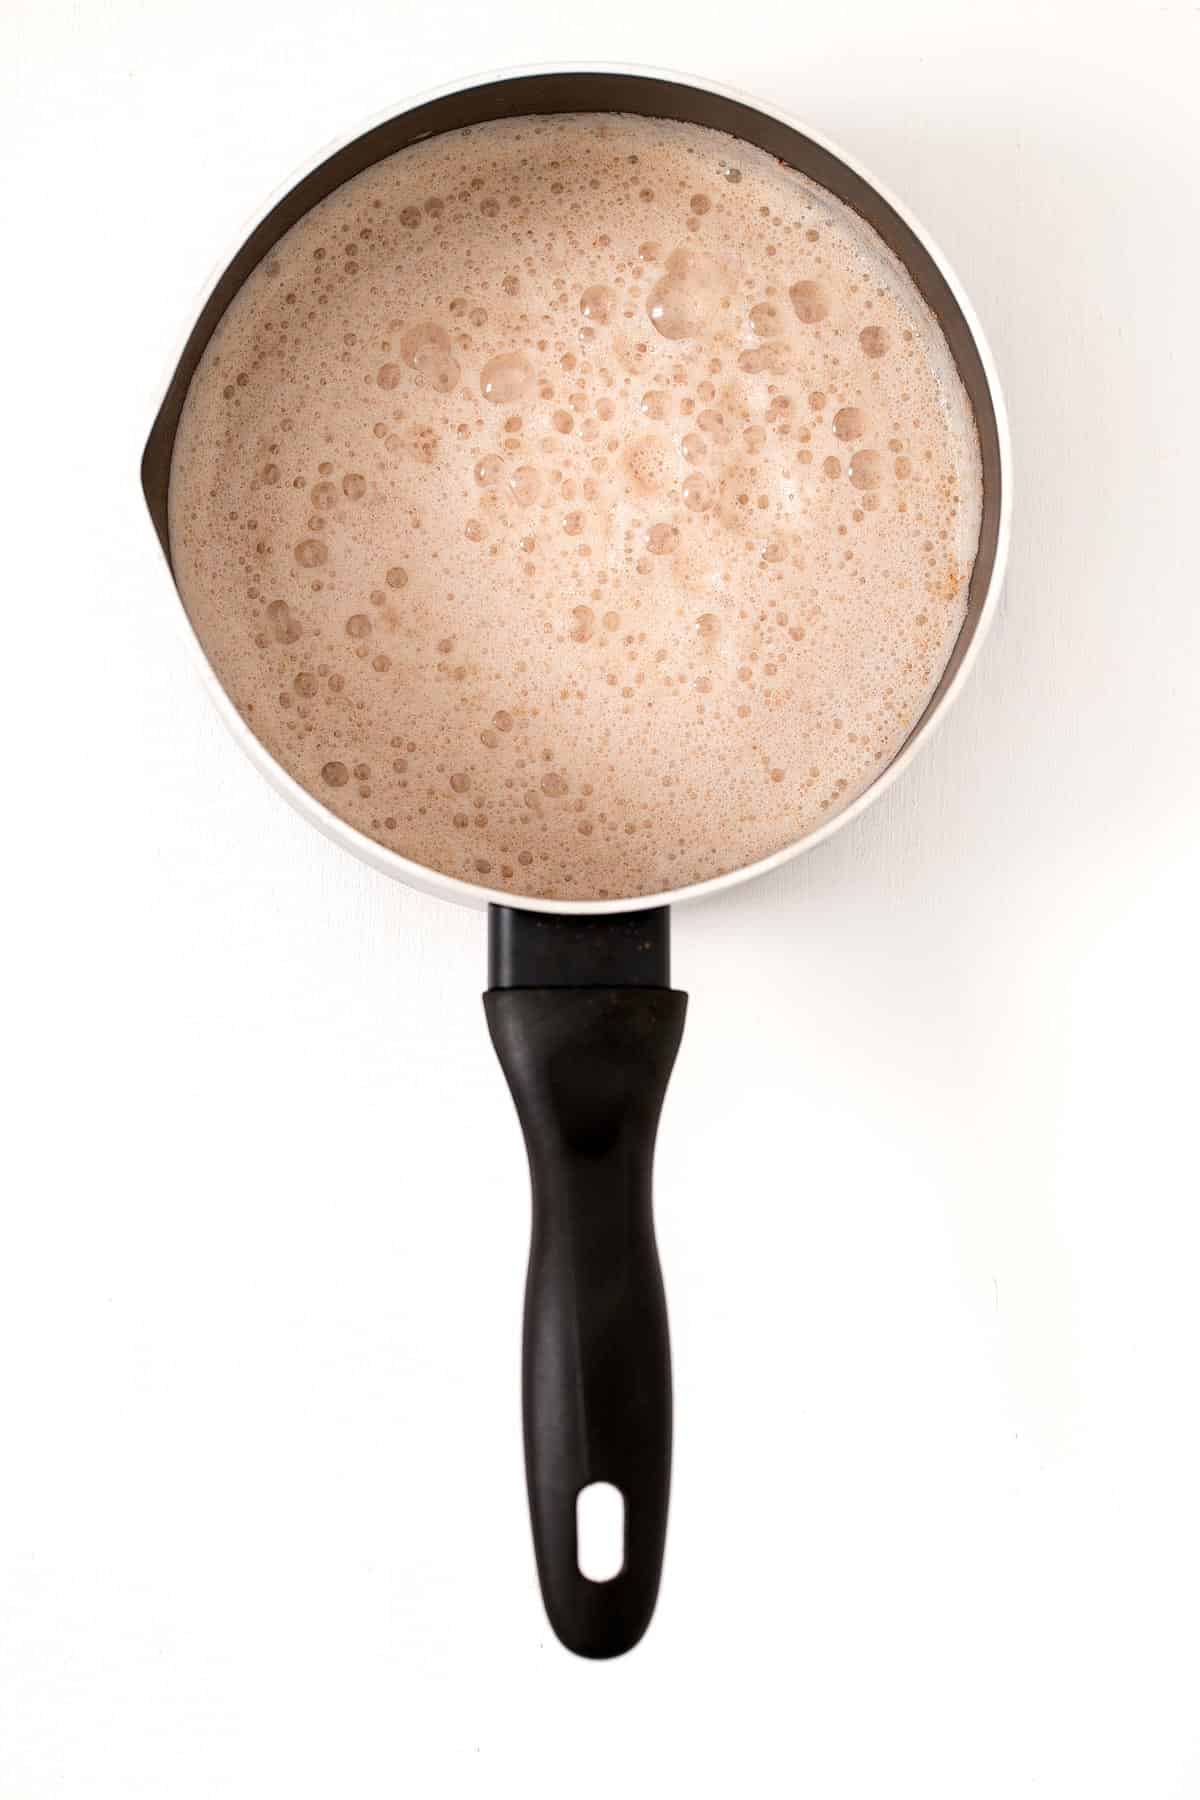 Latte de Jengibre. - El latte de jengibre es una bebida muy sencilla, rica y reconfortante. Es un sustituto saludable al café y se prepara en un momento.